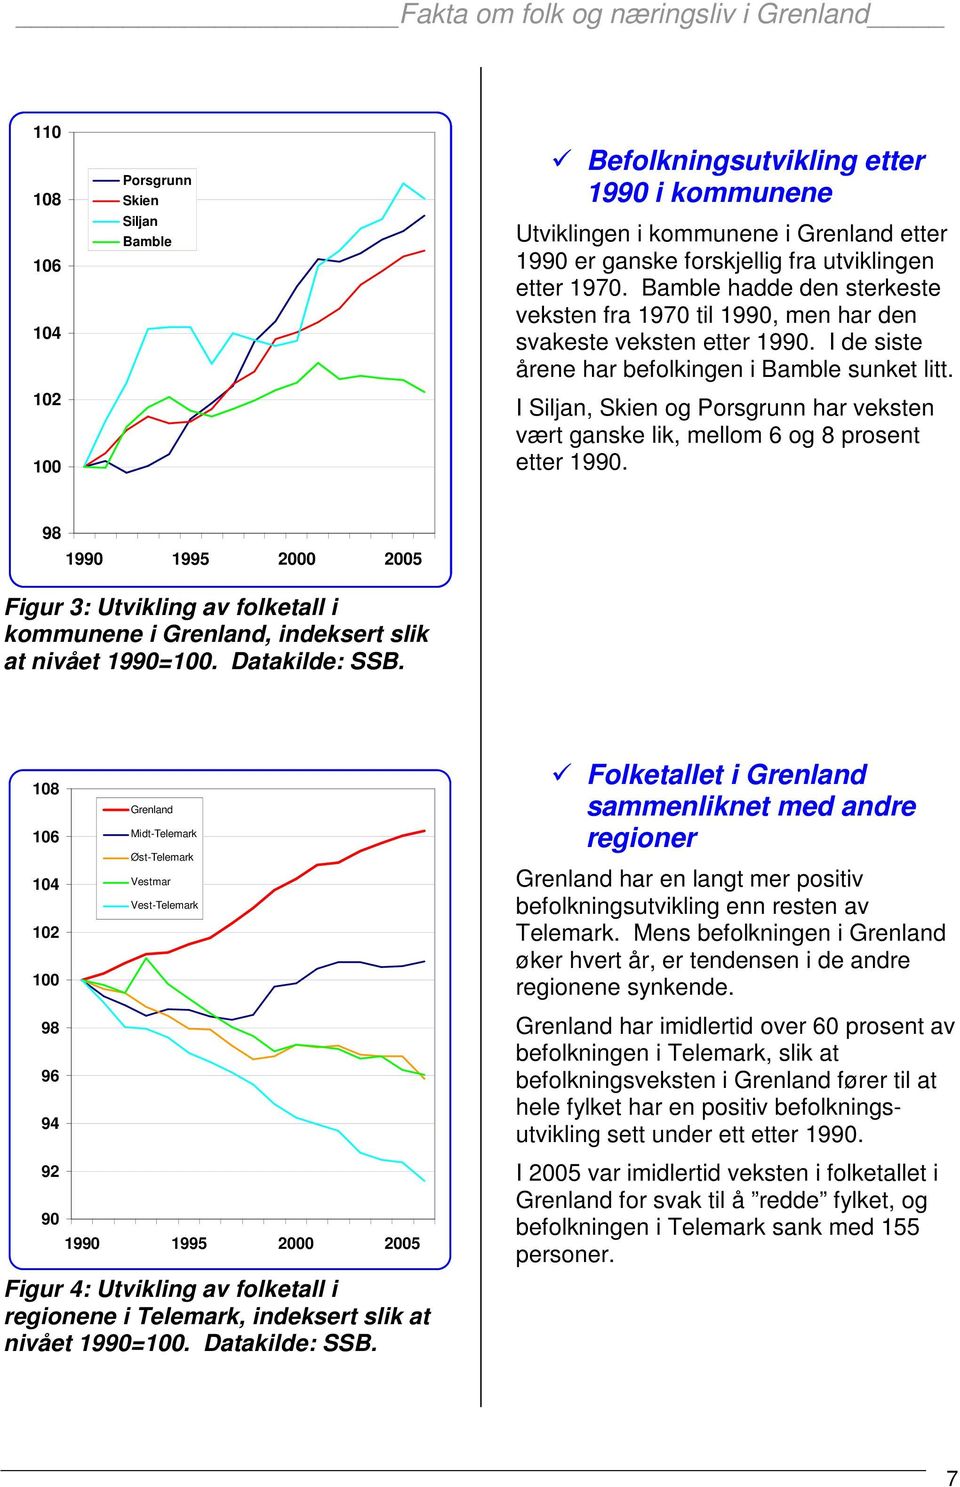 I Siljan, Skien og Porsgrunn har veksten vært ganske lik, mellom 6 og 8 prosent etter 1990.